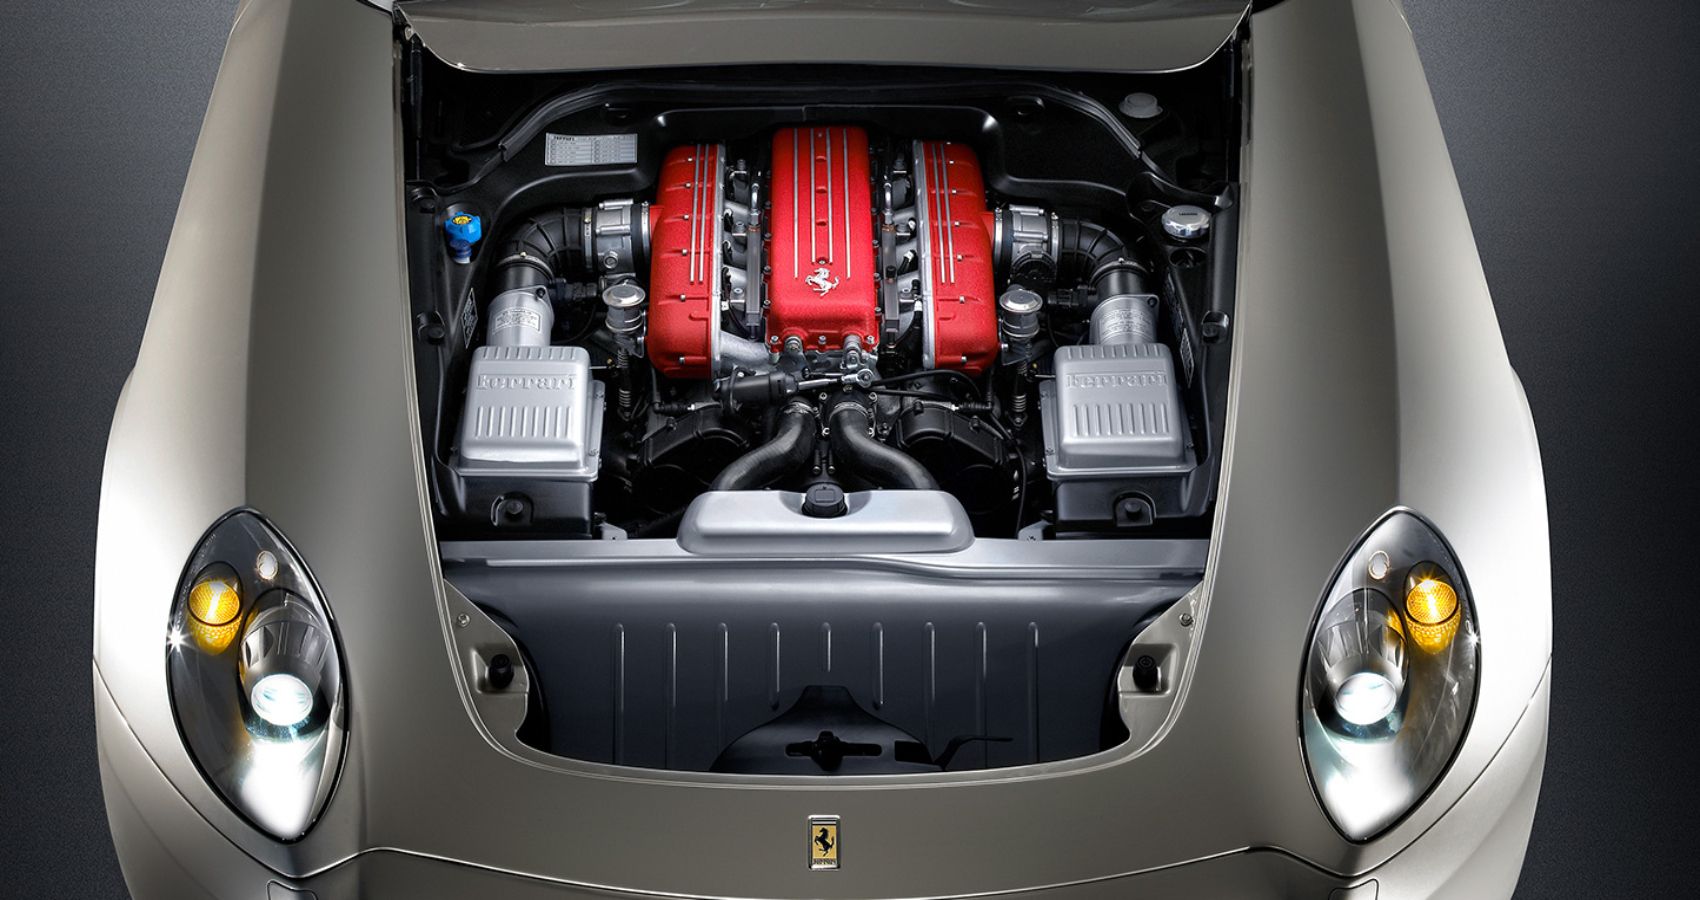 Ferrari 612 Scaglietti V12 Engine Top Image